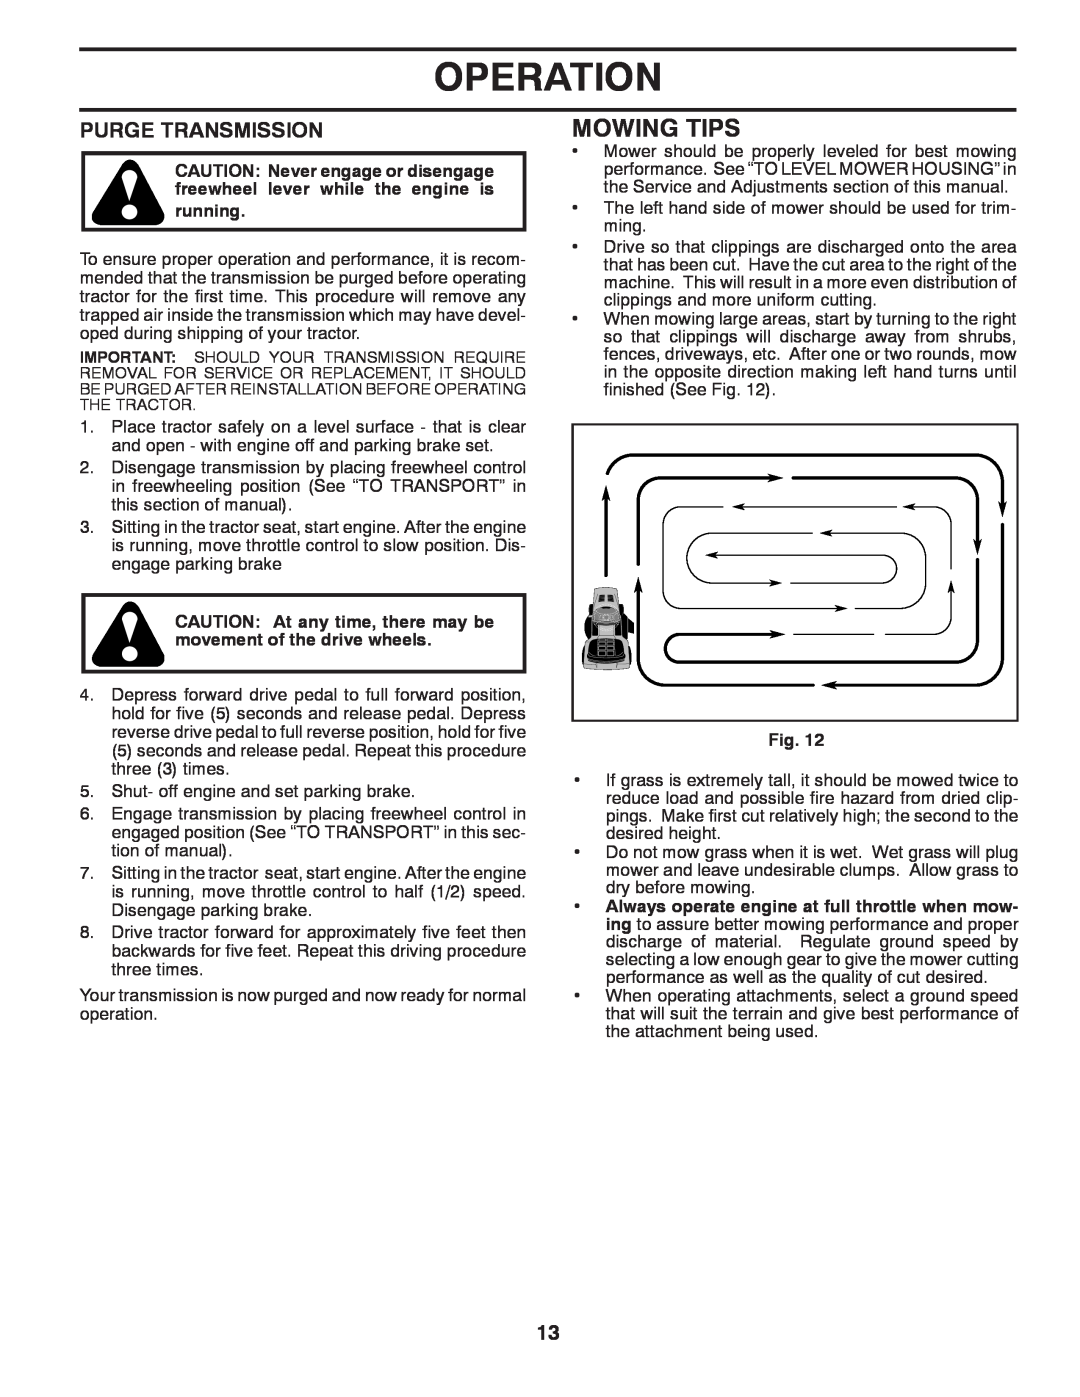 Poulan PPH20K46 manual Mowing Tips, Purge Transmission, Operation 